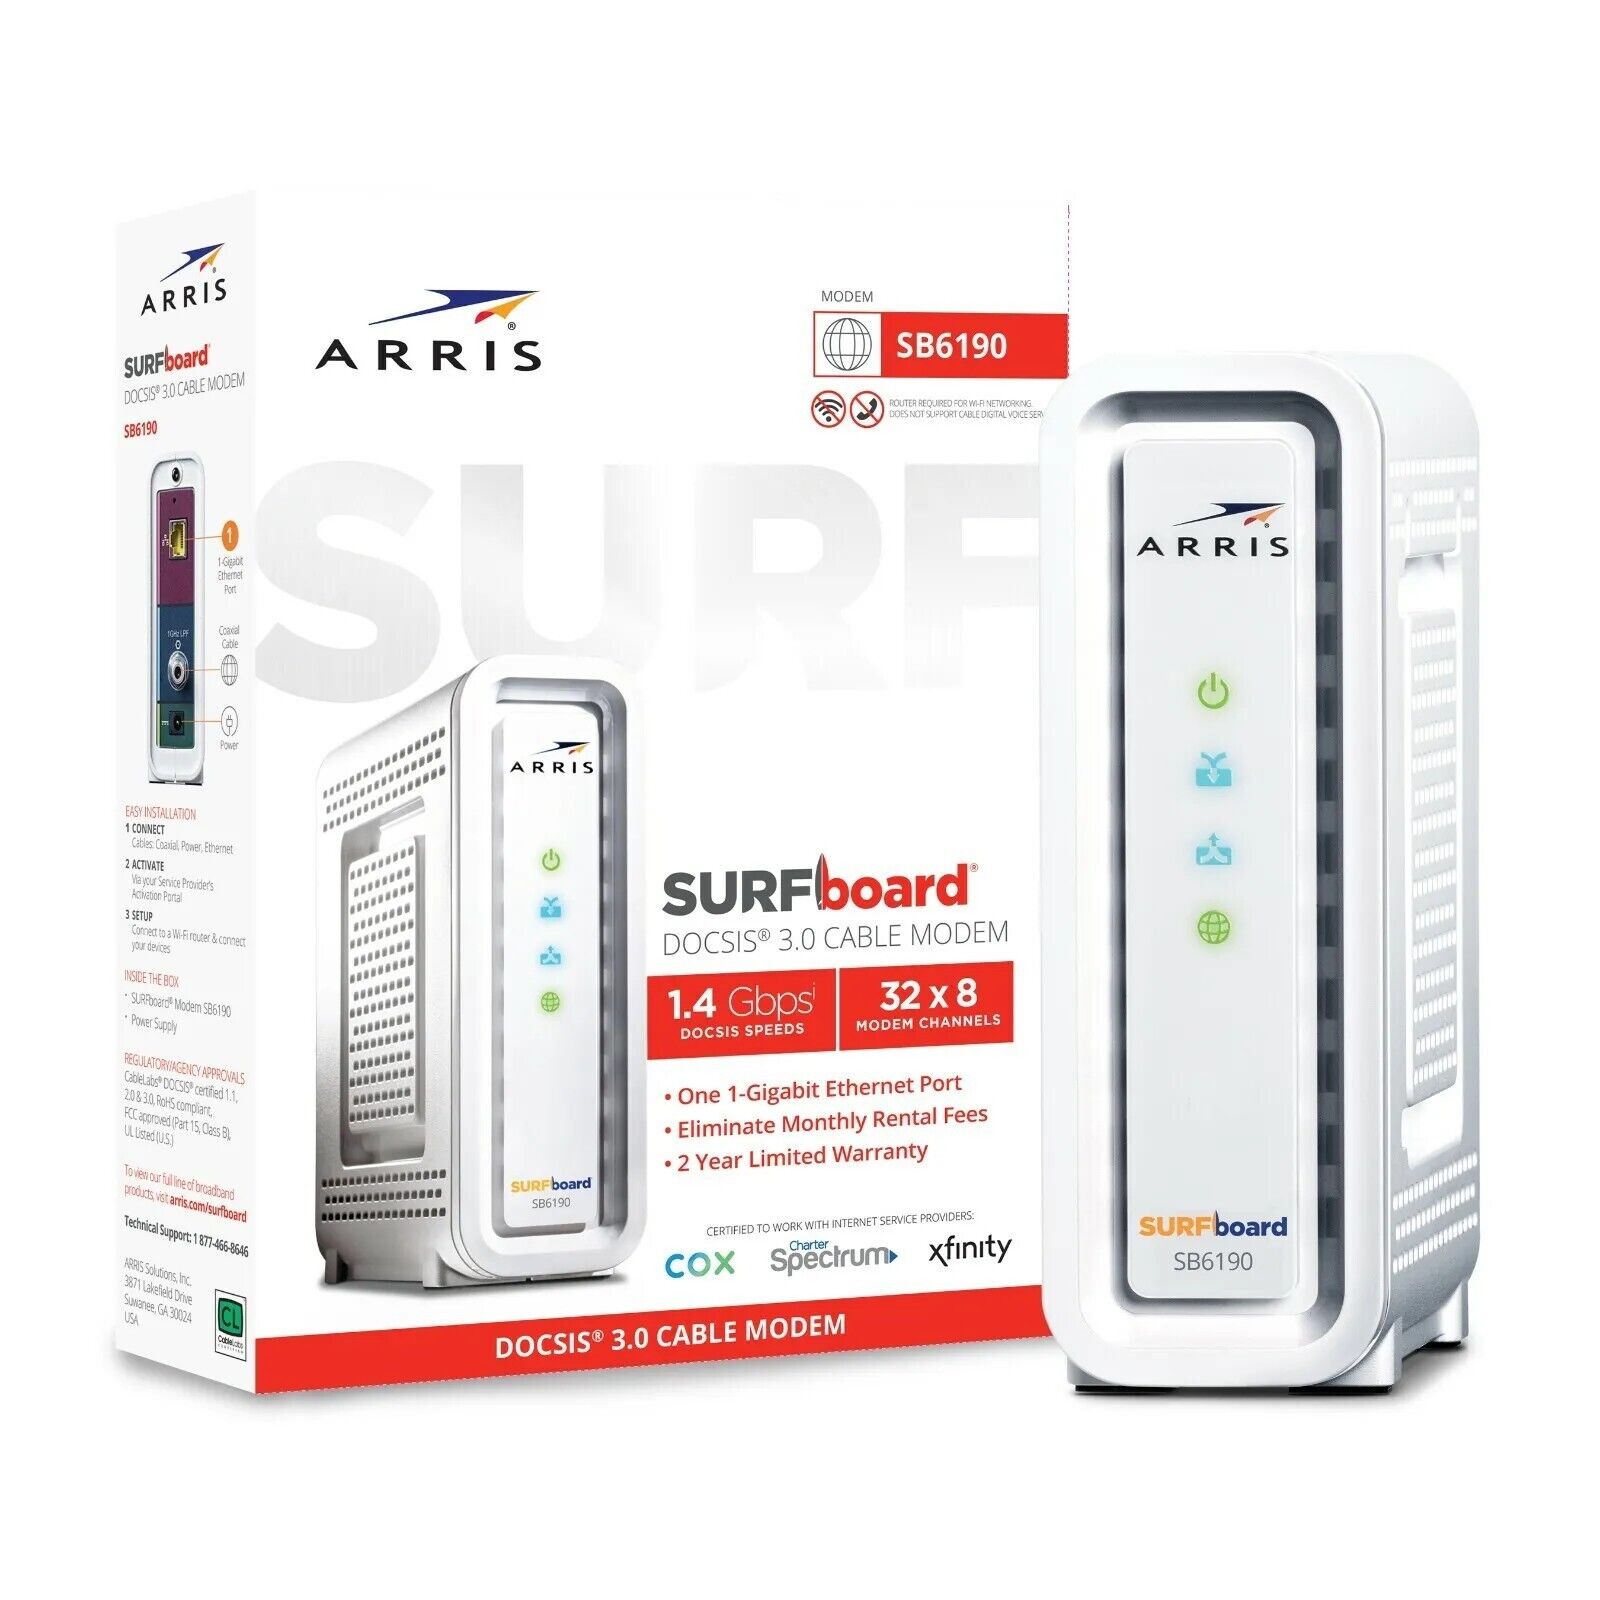 ARRIS SURFboard SB6190. DOCSIS 3.0 Cable Modem.  32 x 8 Modem Channels 1.4Gbps 